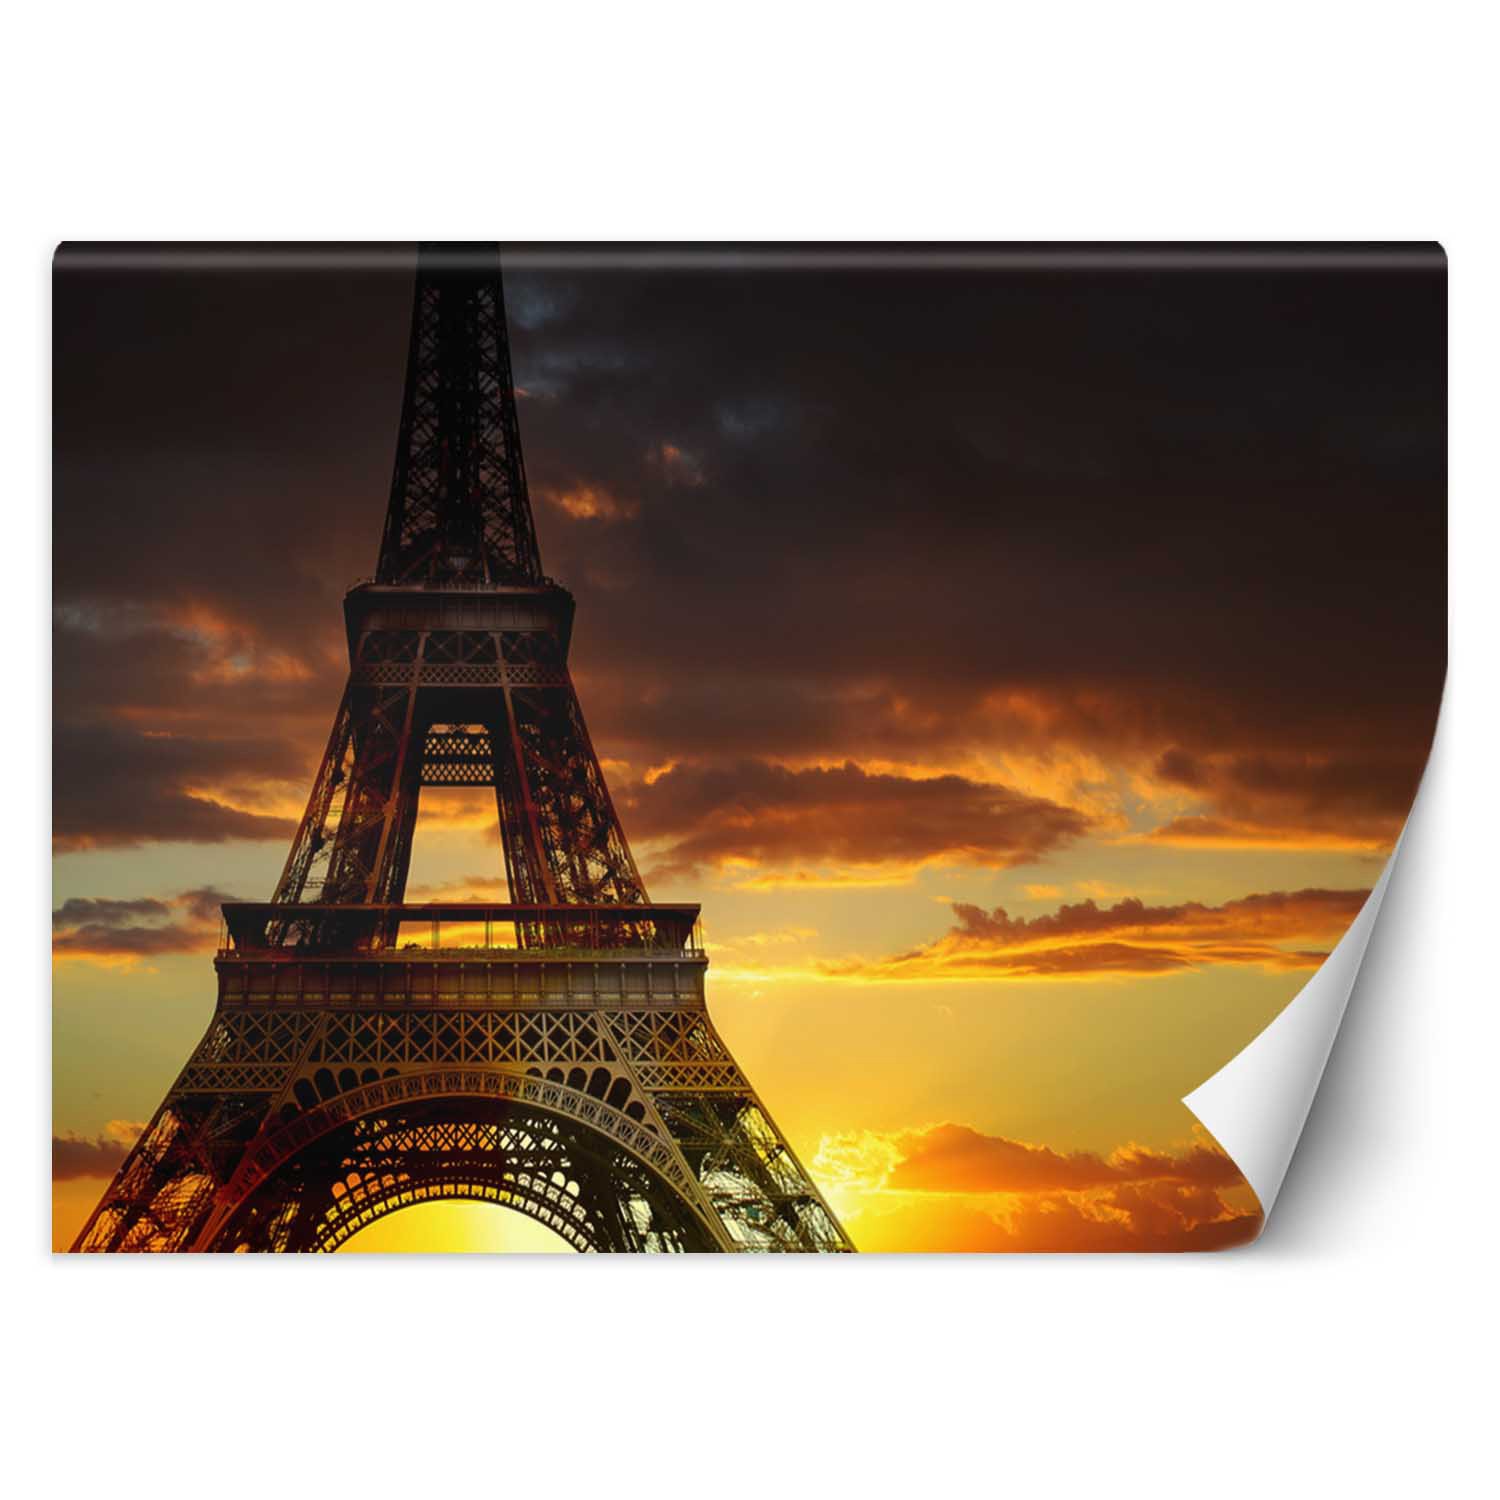 Trend24 – Behang – Eiffeltoren Bij Zonsondergang – Vliesbehang – Fotobehang – Behang Woonkamer – 450×315 cm – Incl. behanglijm